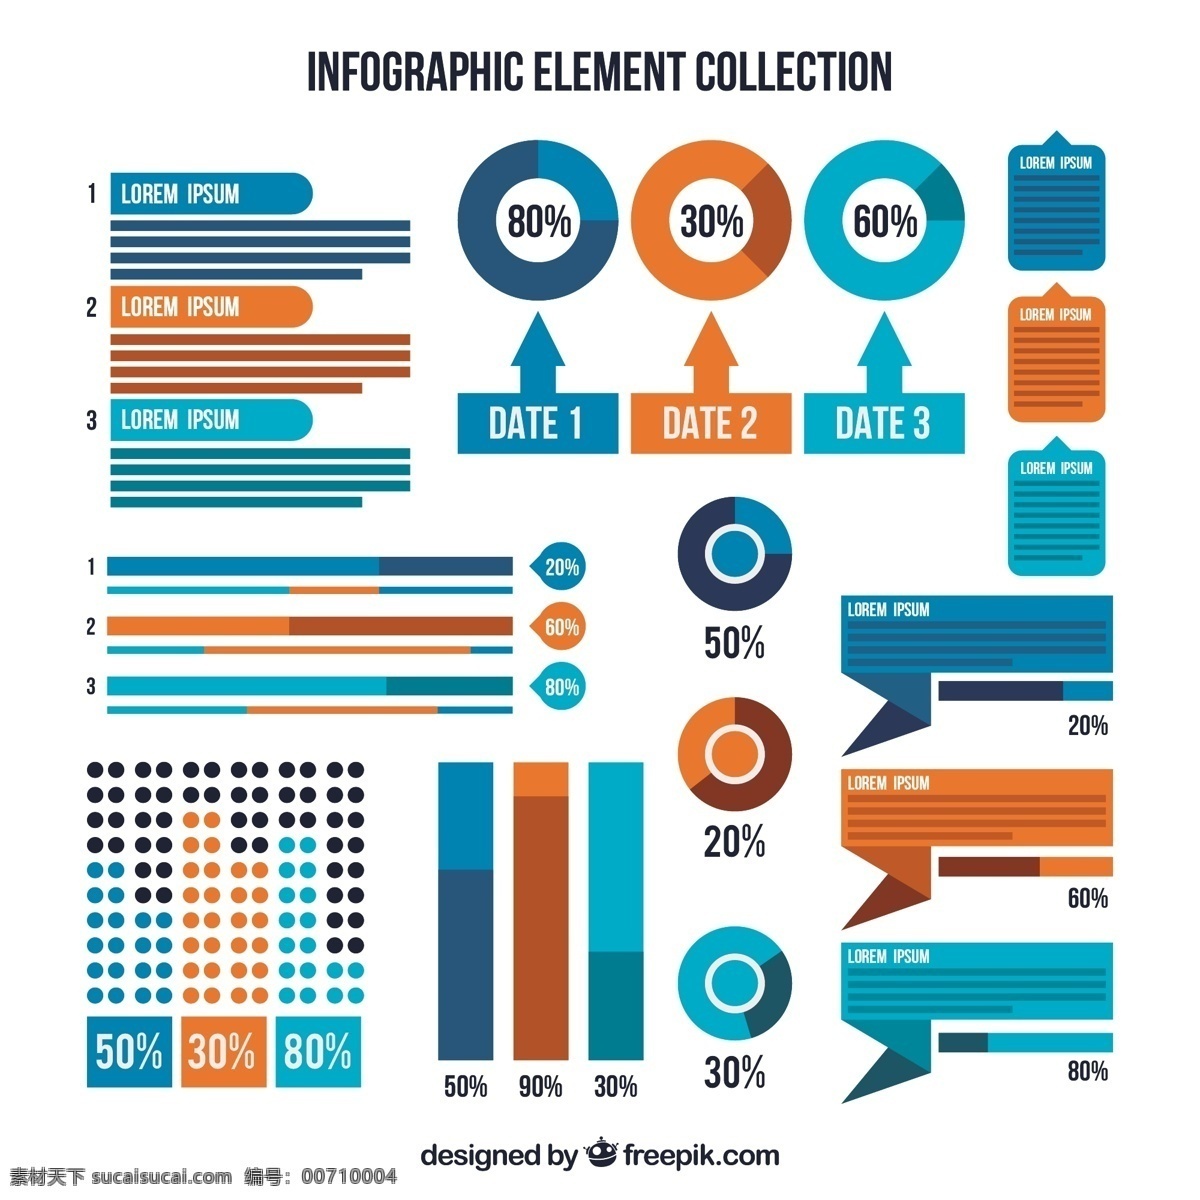 橙色 蓝色 图表 元素 包 业务 模板 蓝 营销 橙 图 过程 图表模板 数据 信息 内容 步骤 商业图表 图形 成长 发展